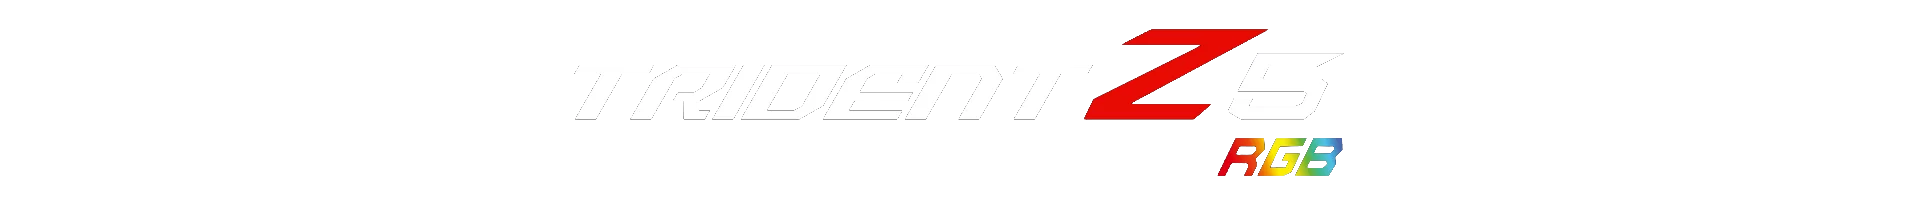 02-trident-z5-rgb-logo-eng.png__PID:128e44fd-7348-4901-bba3-8d584a459a27